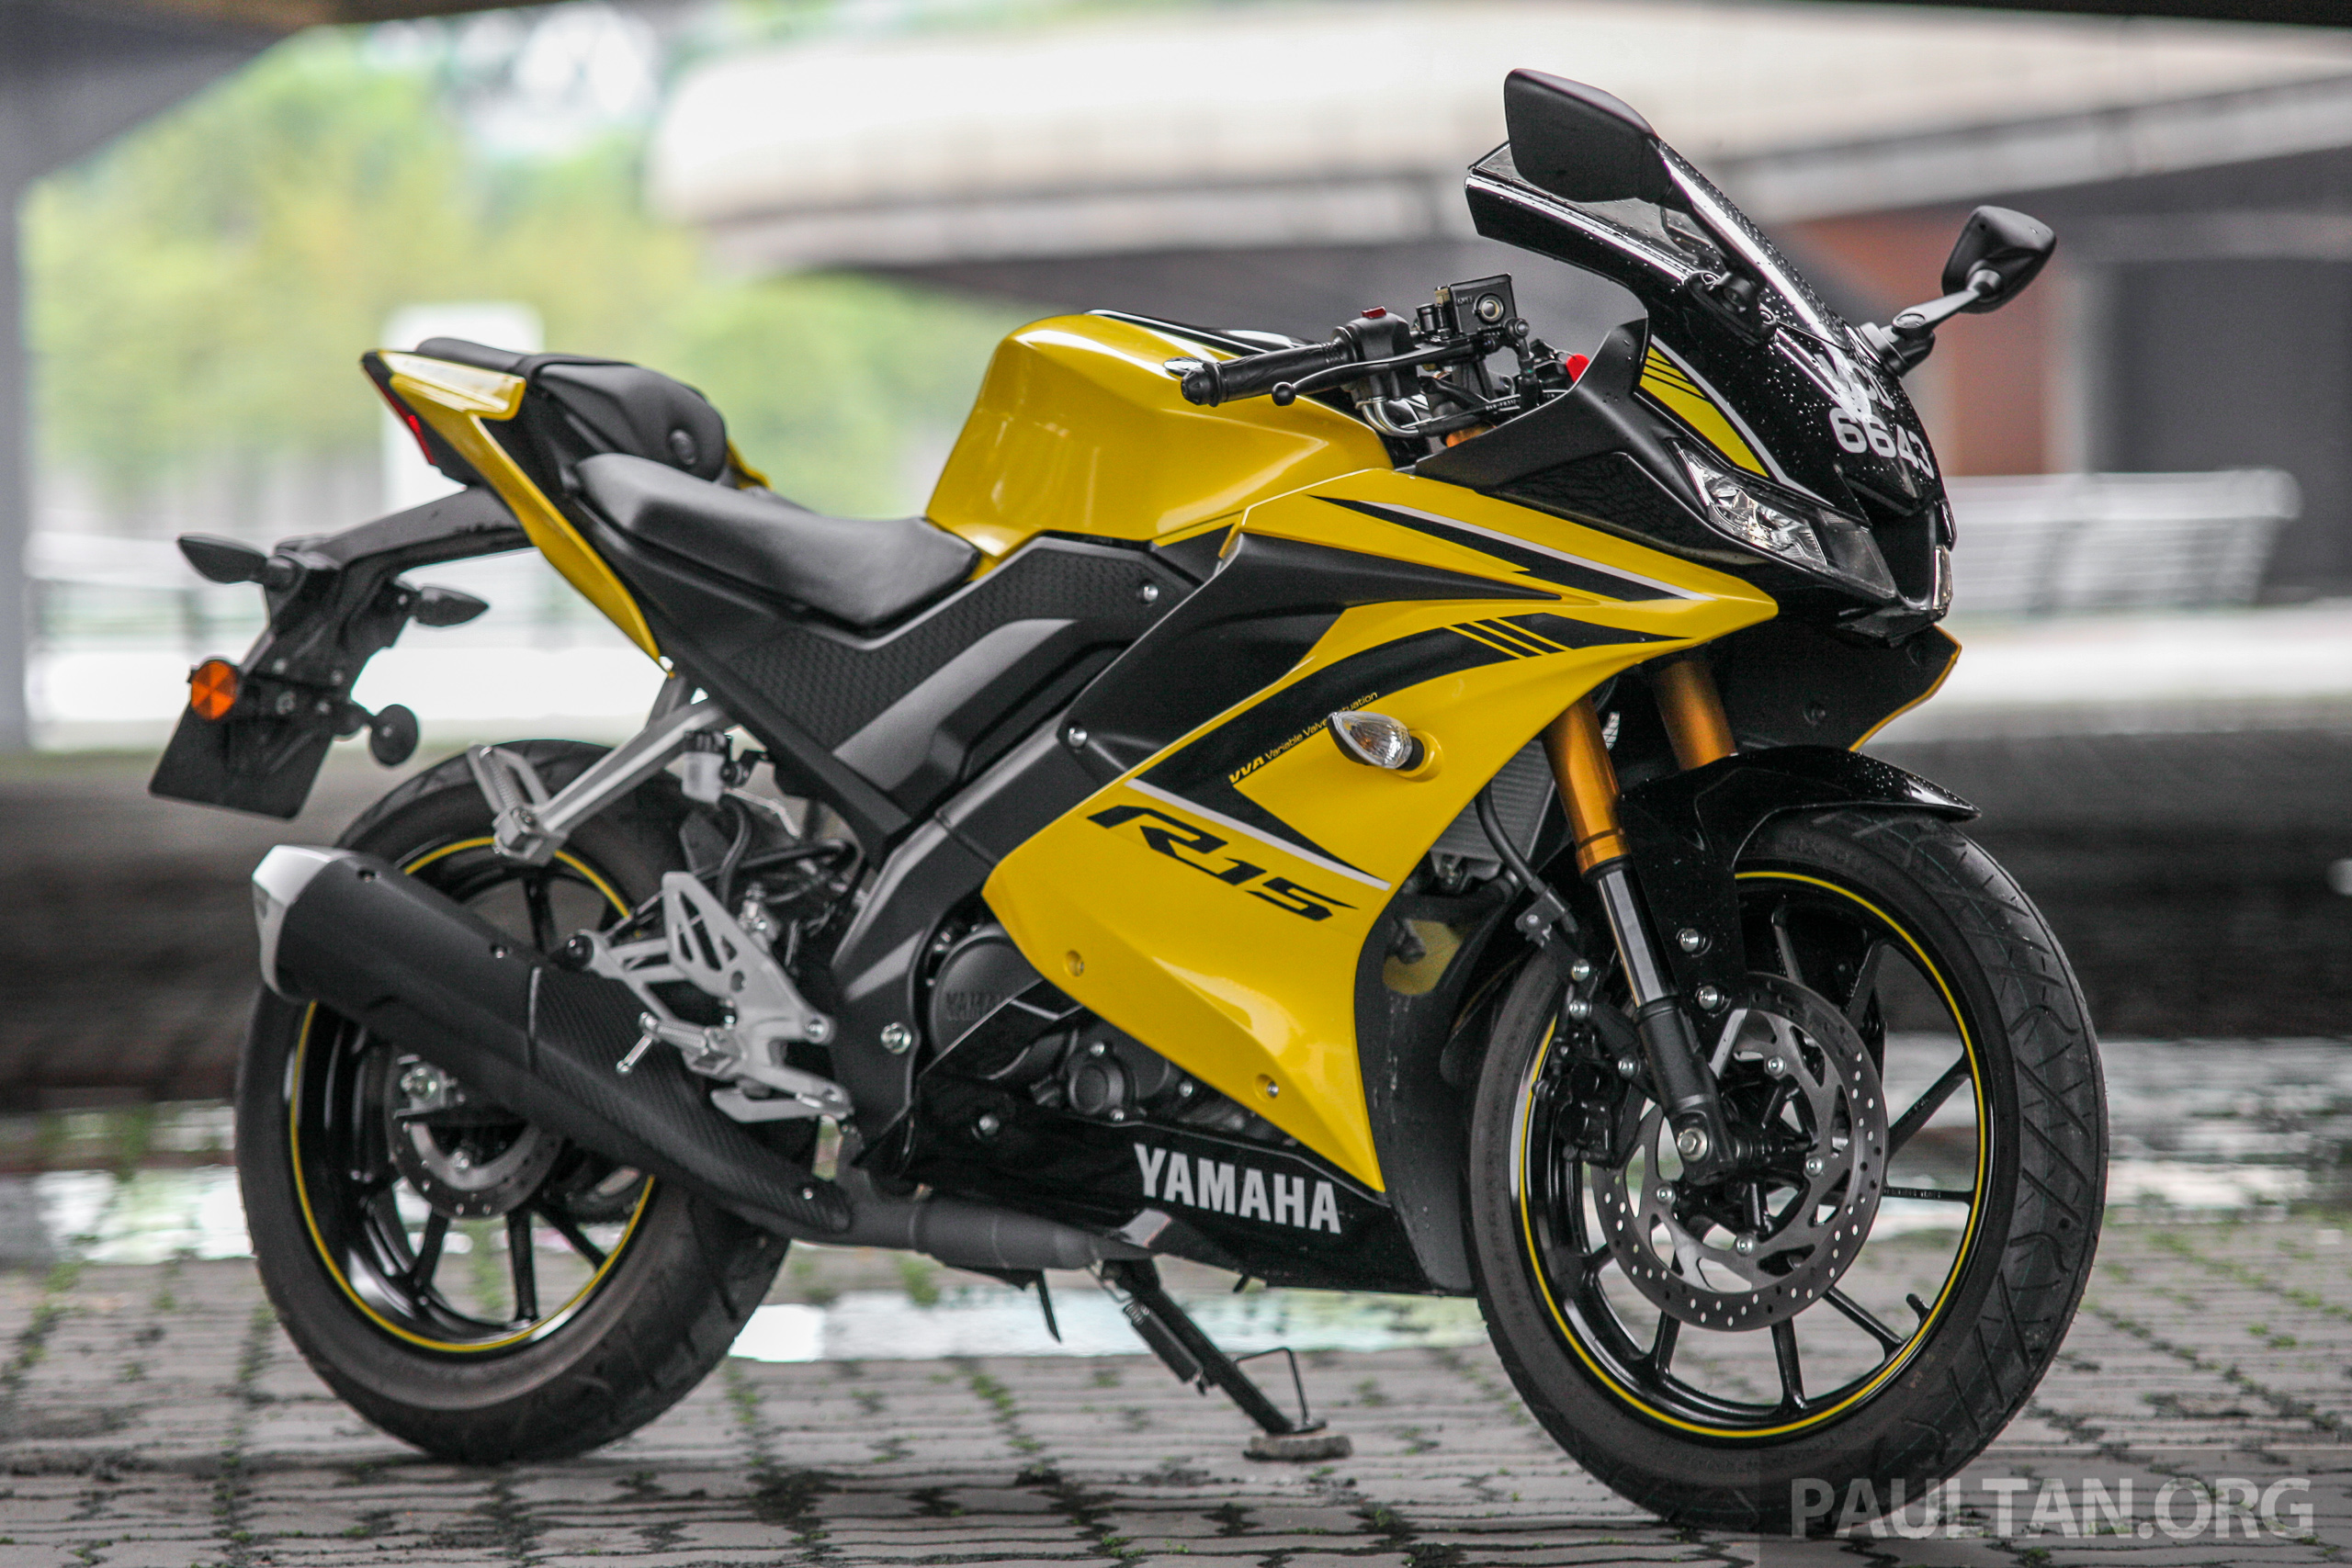 Yamaha r15 price in malaysia